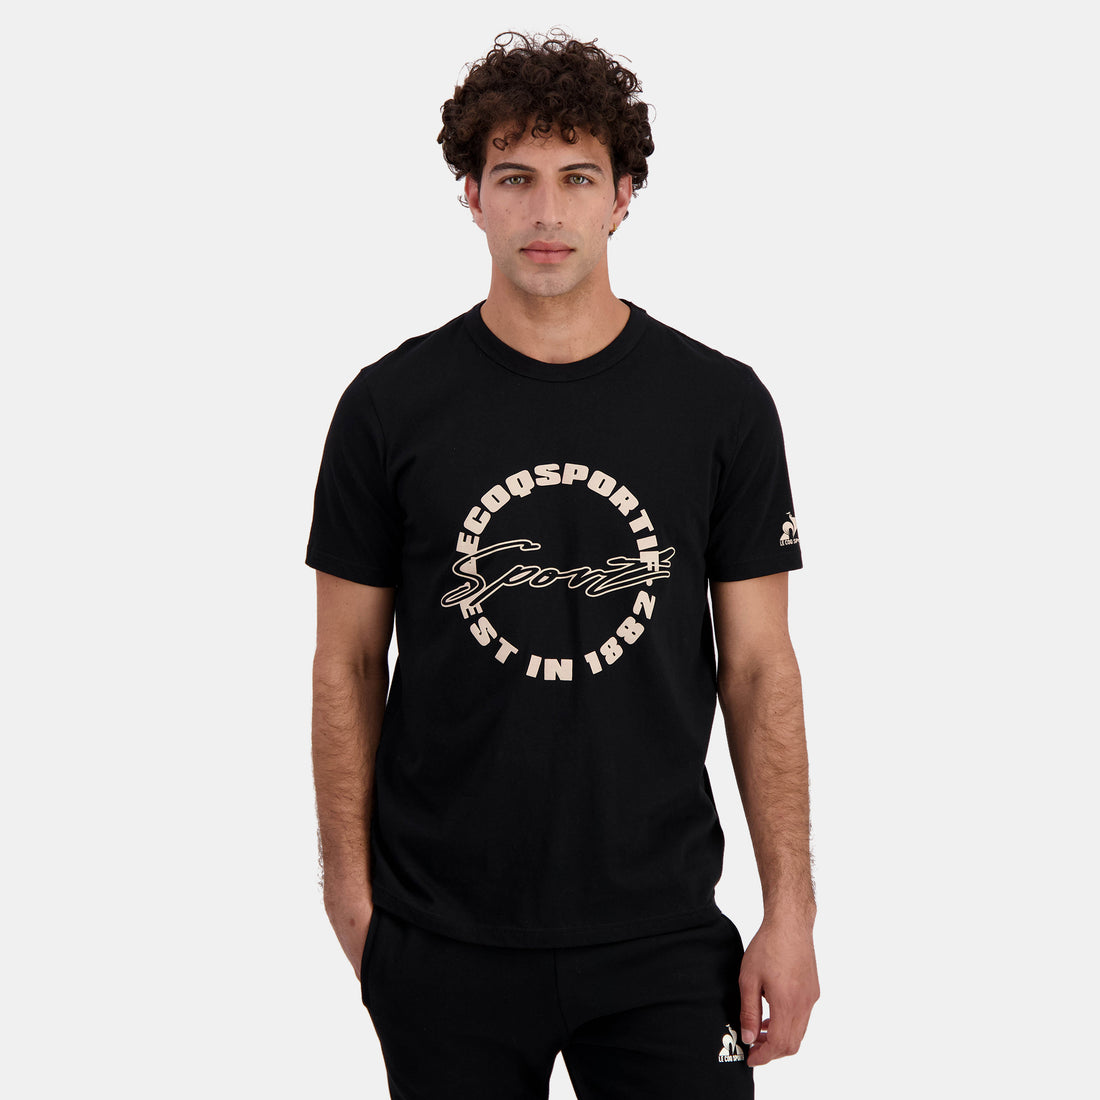 2422254-CONTEMPORAIN Tee SS N°1 M black | T-shirt Homme